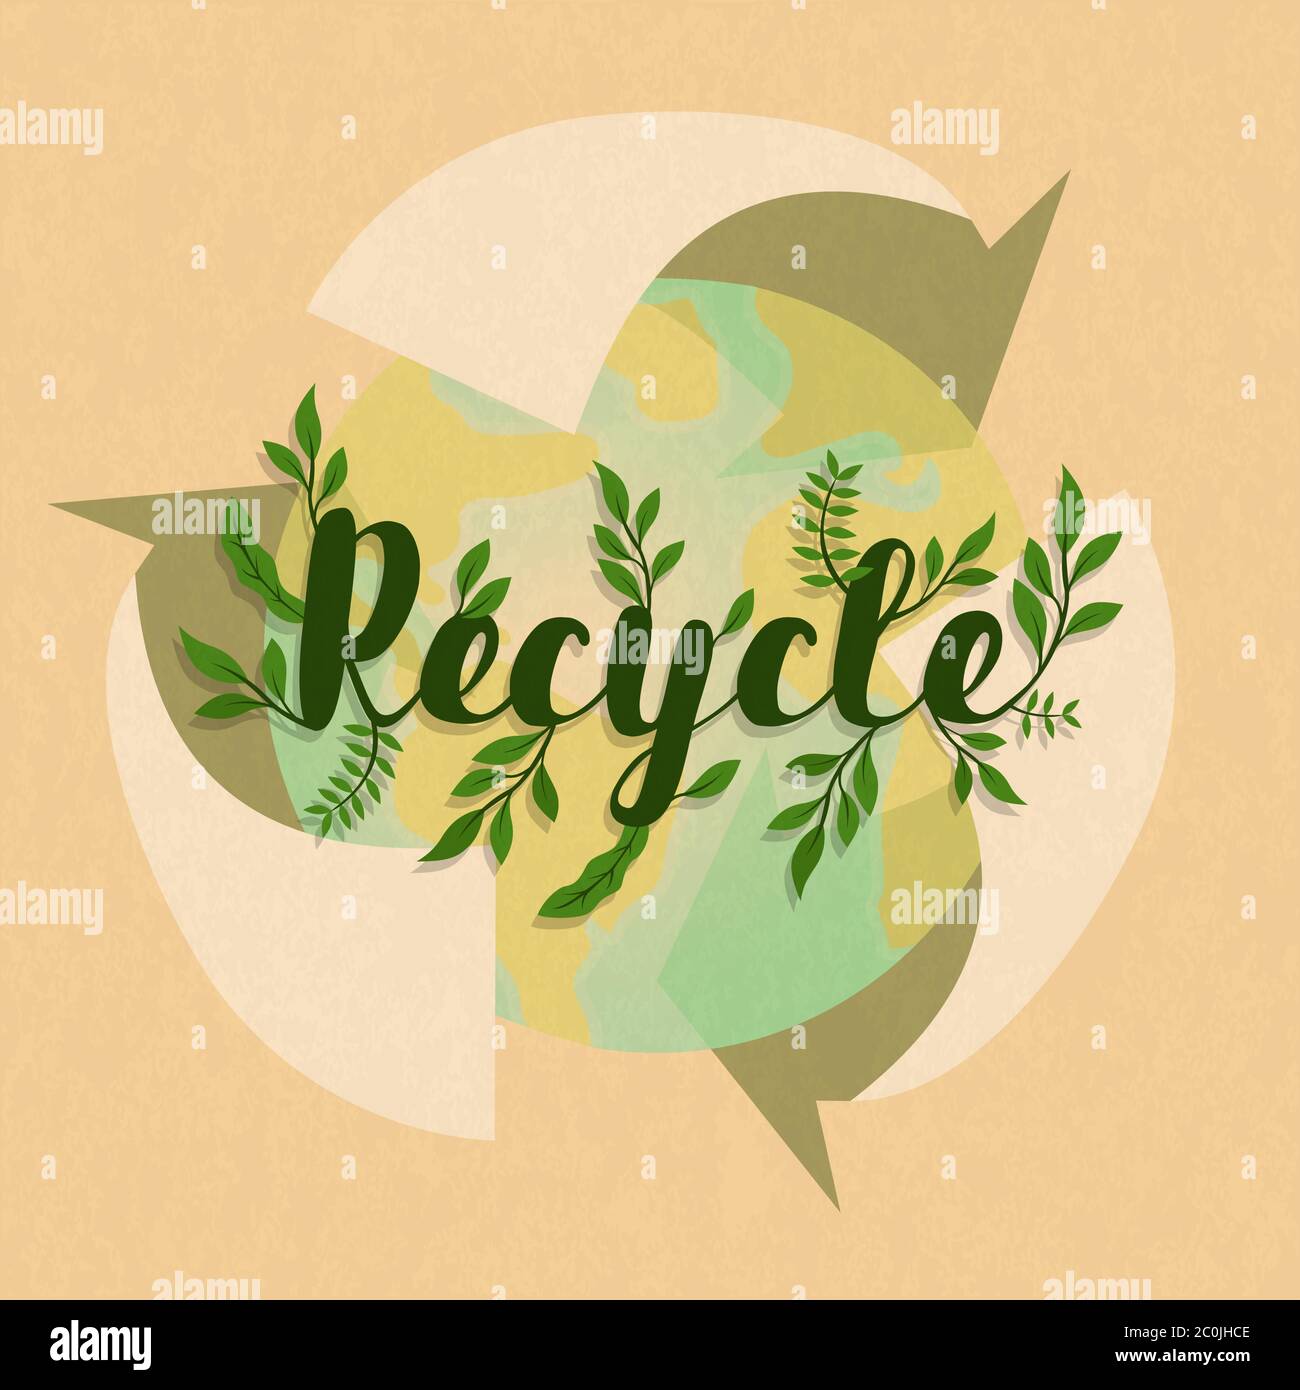 Simbolo di riciclaggio con mappa pianeta terra verde e foglia di pianta. Concetto di guida ambientale per l'attività di riciclaggio. Illustrazione Vettoriale